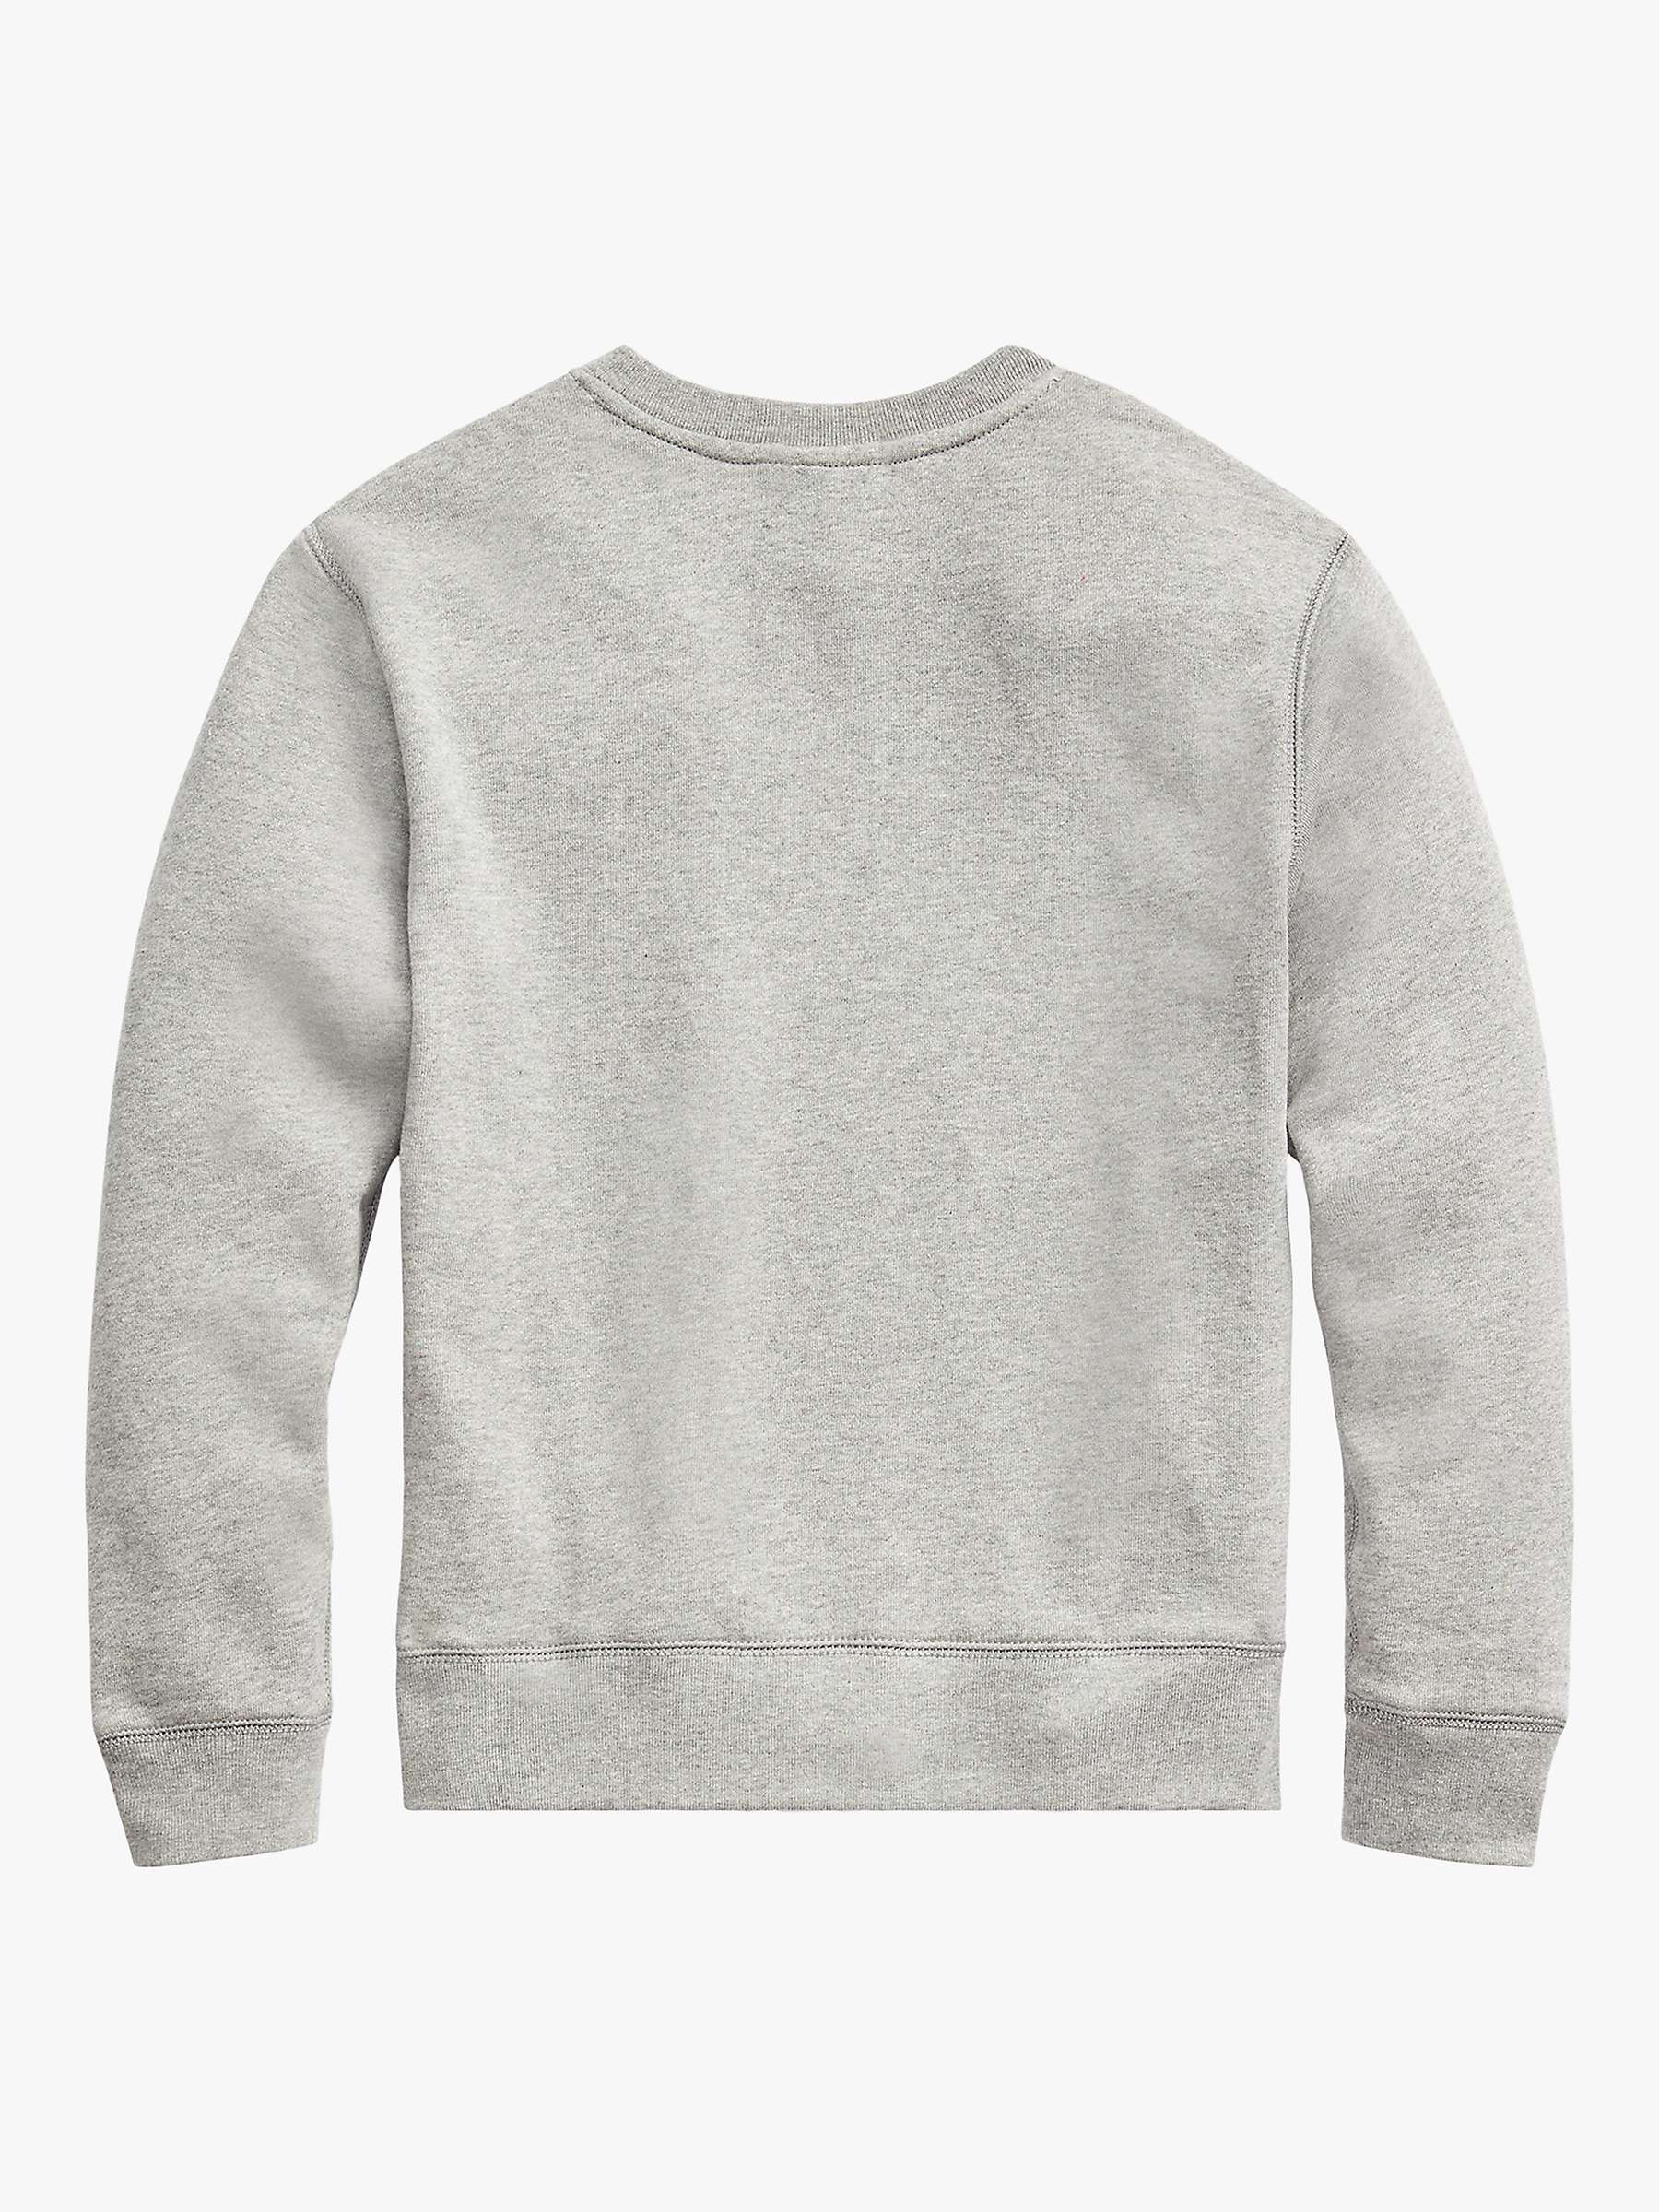 Buy Ralph Lauren Kids' Classic Sweatshirt Online at johnlewis.com